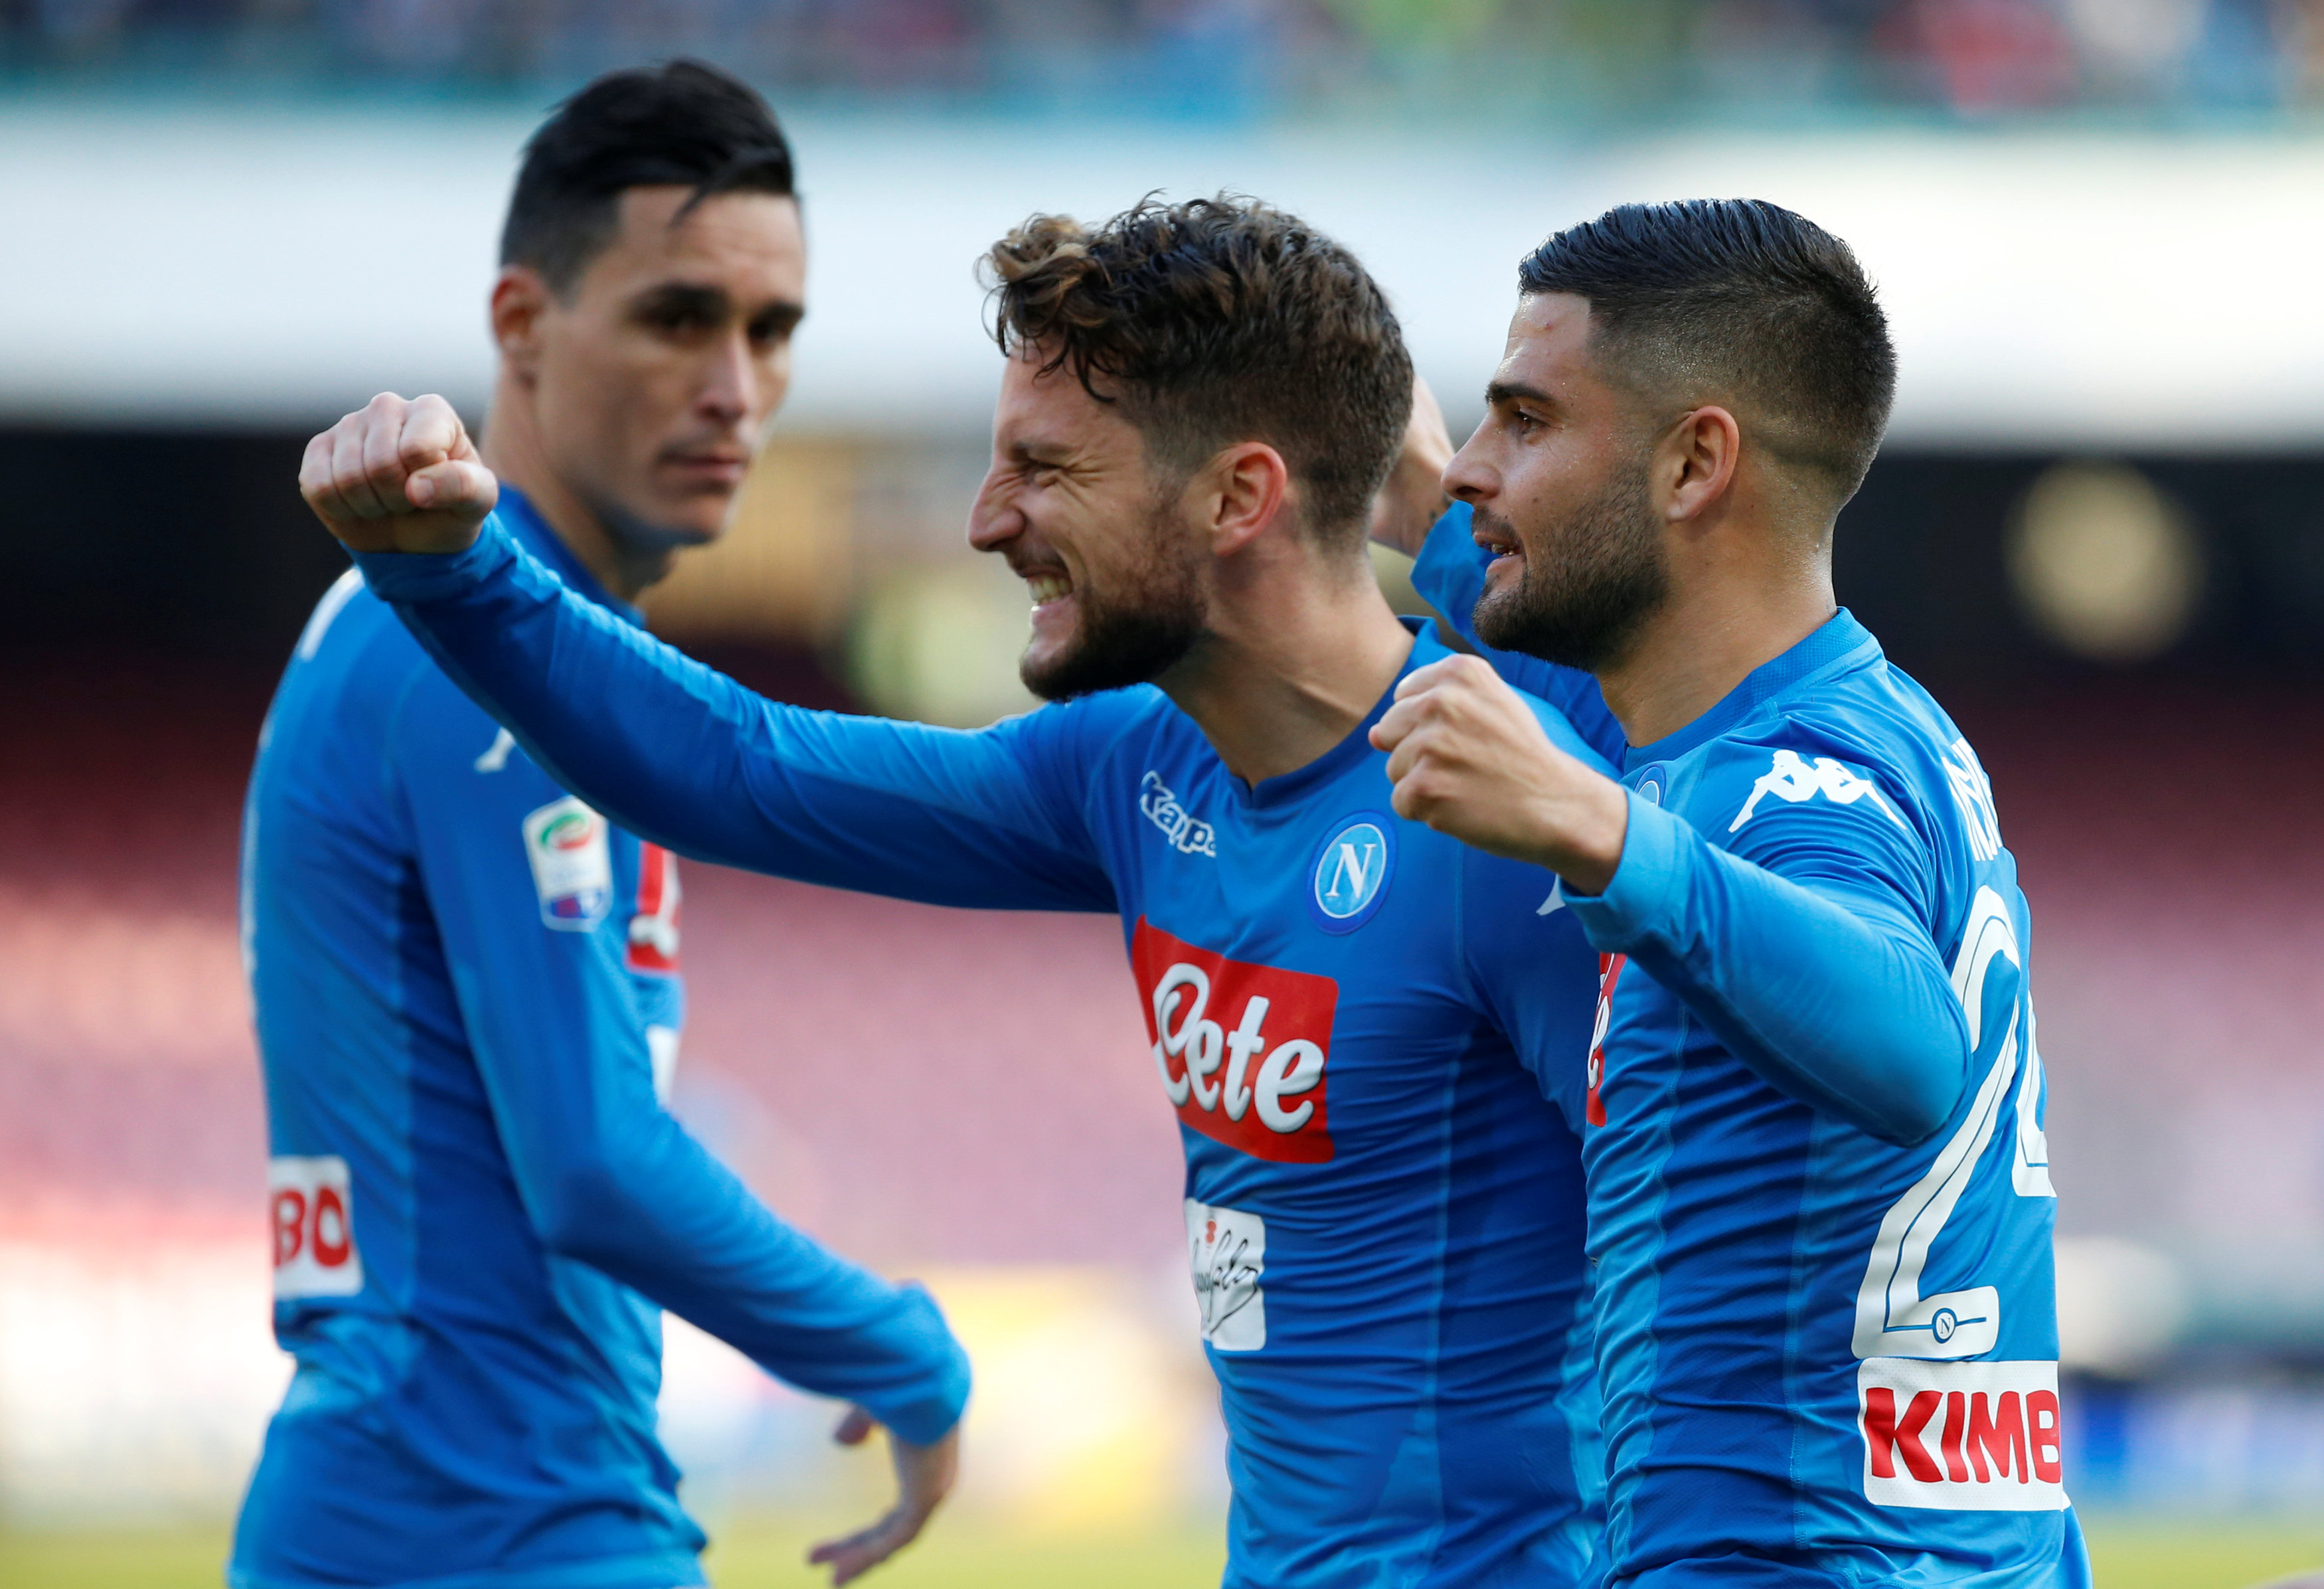 Niềm vui của các cầu thủ Napoli sau khi có bàn gỡ 1-1. Ảnh: REUTERS